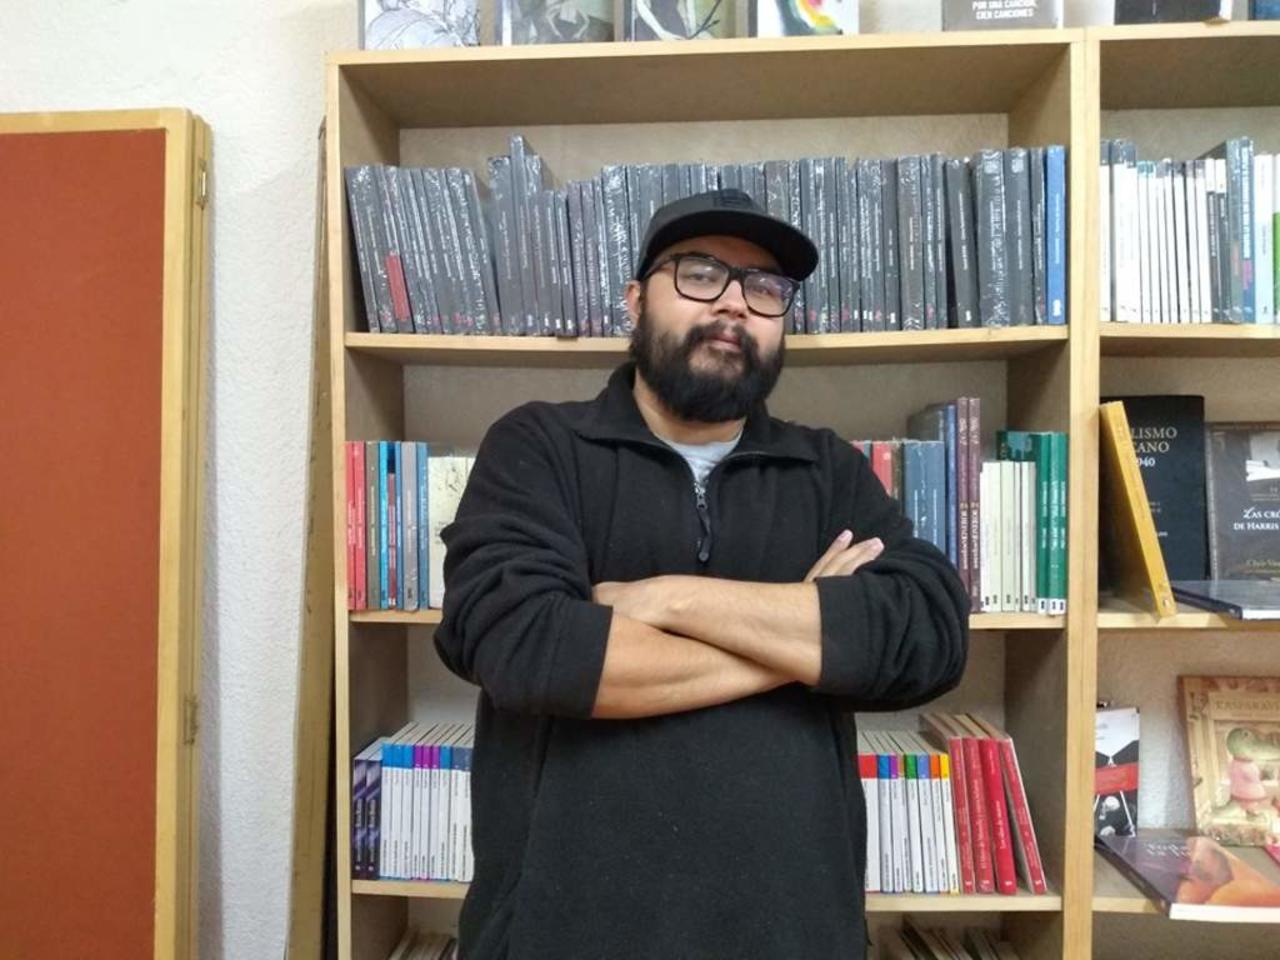 Fernando de la Vara es el escritor lagunero invitado a este importante encuentro literario (ARCHIVO)

